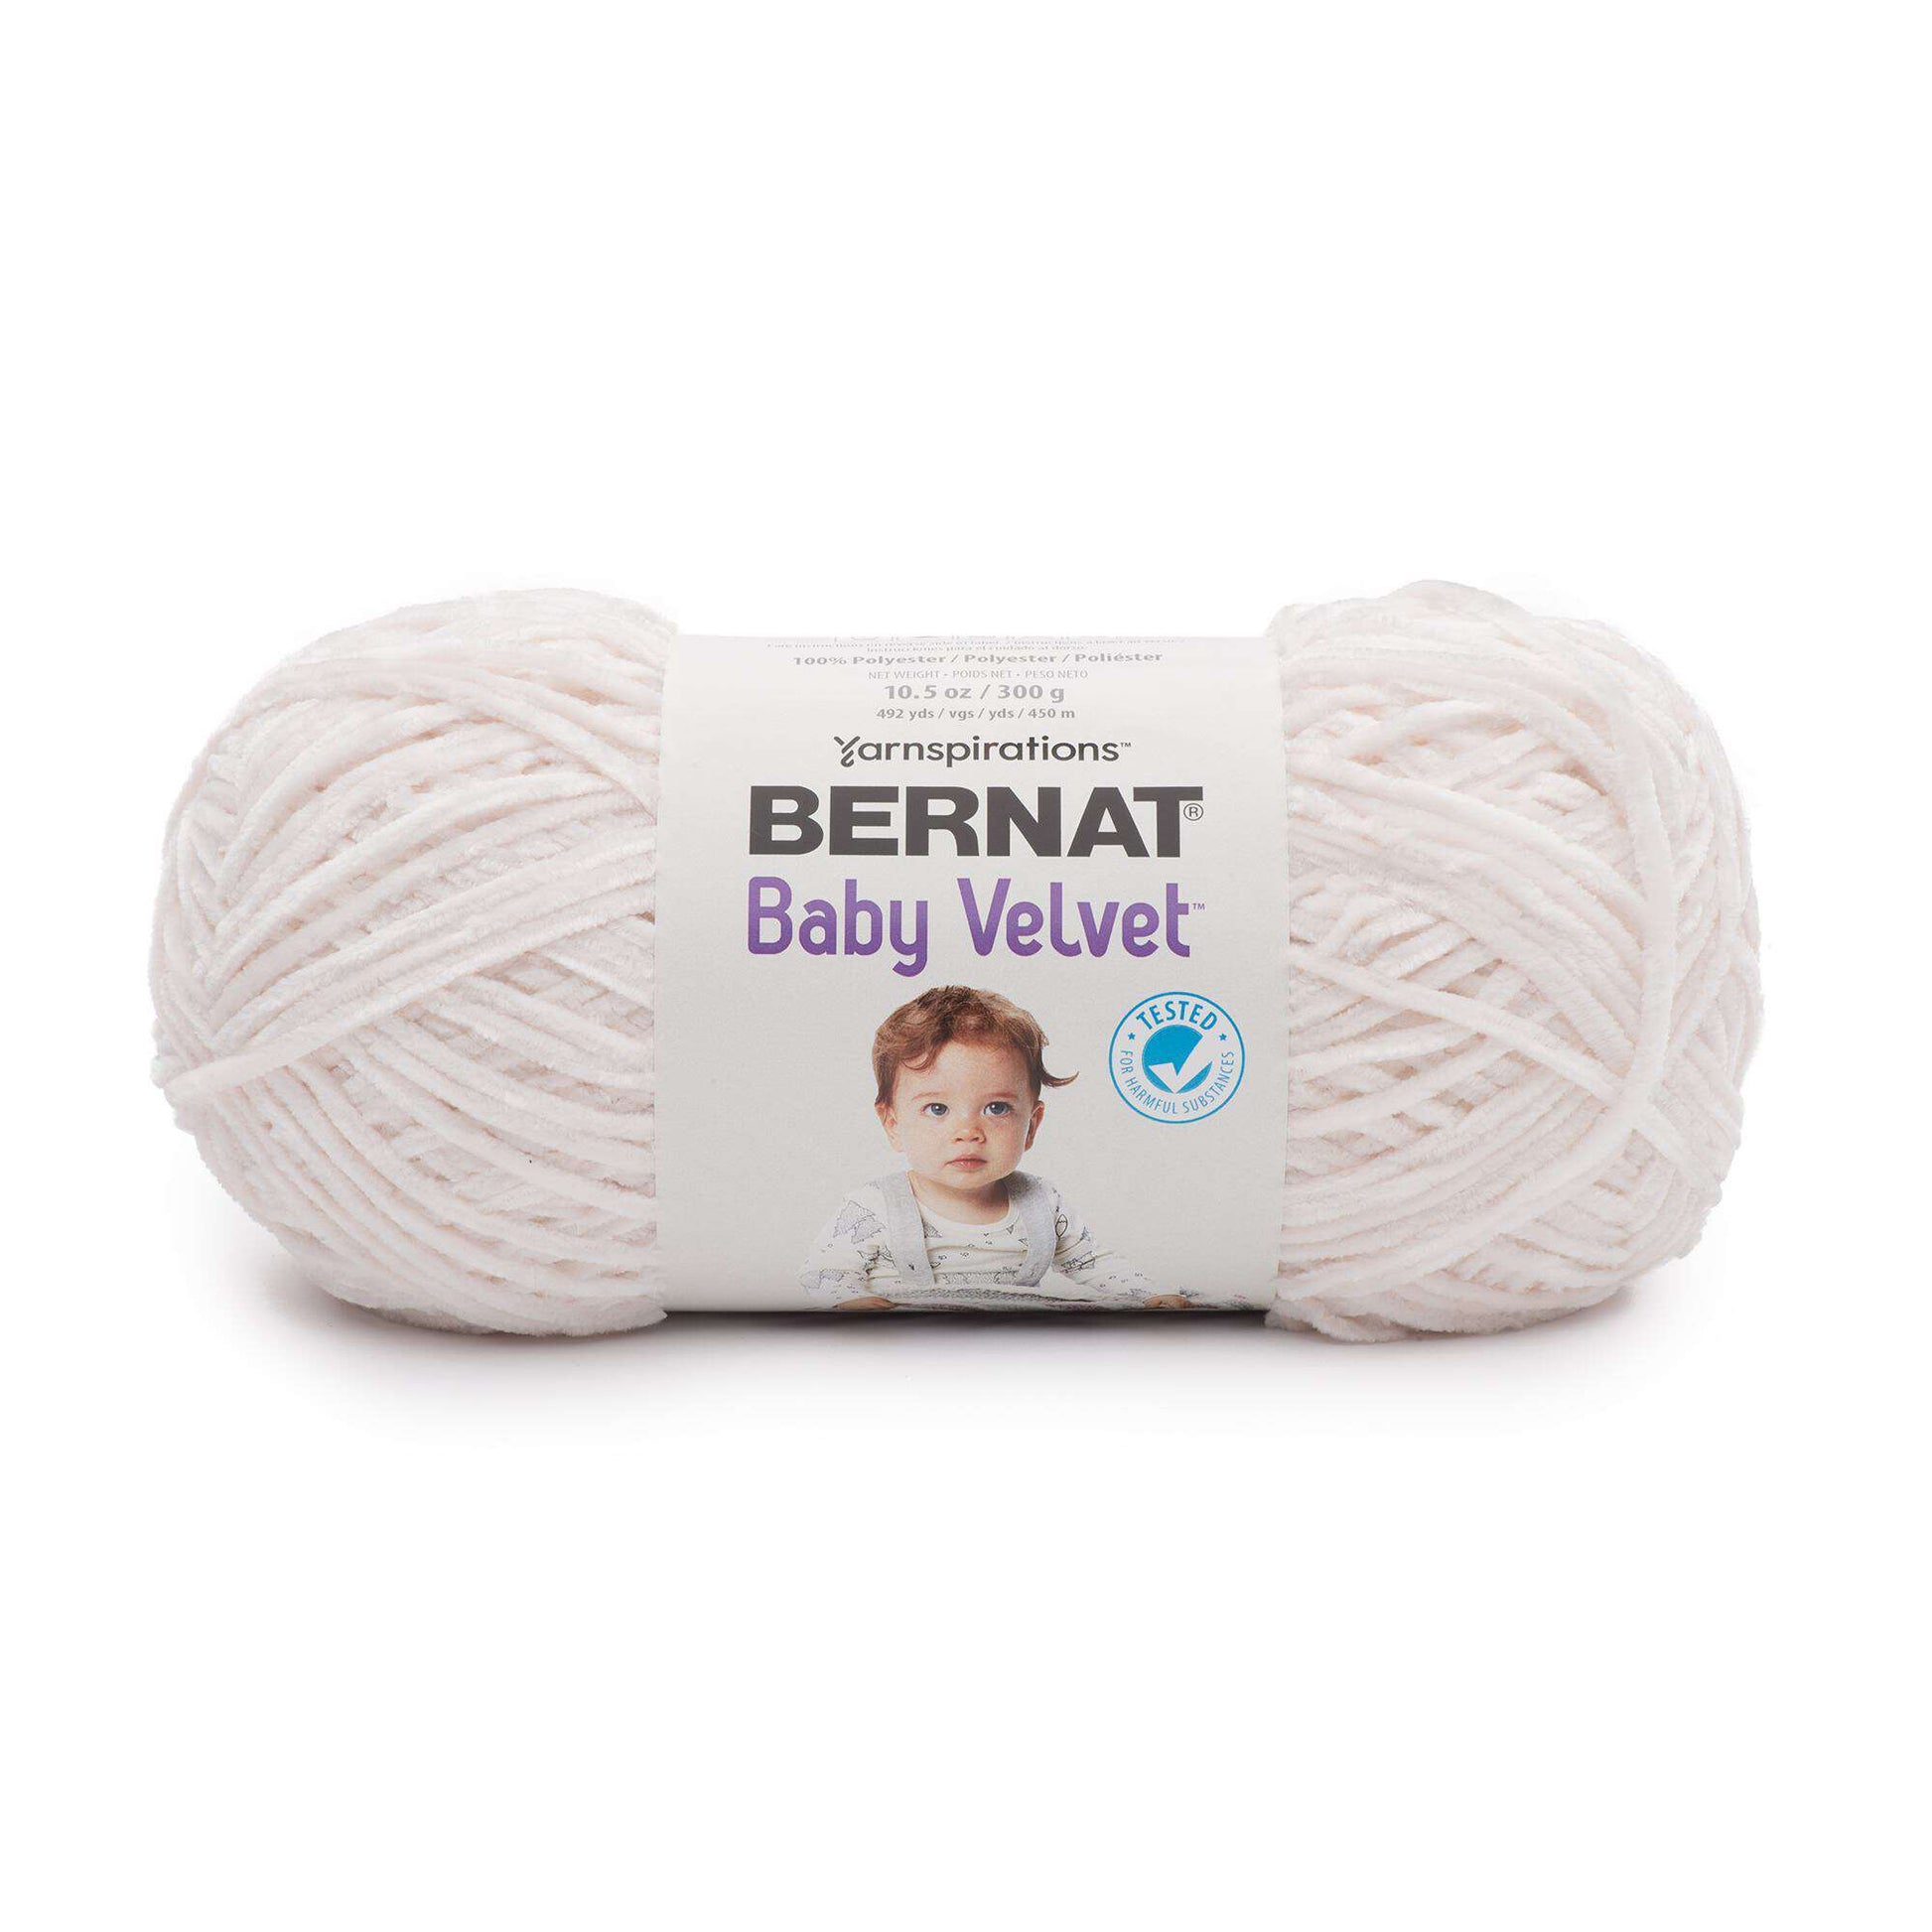 Bernat Baby Velvet Yarn (300g/10.5oz)